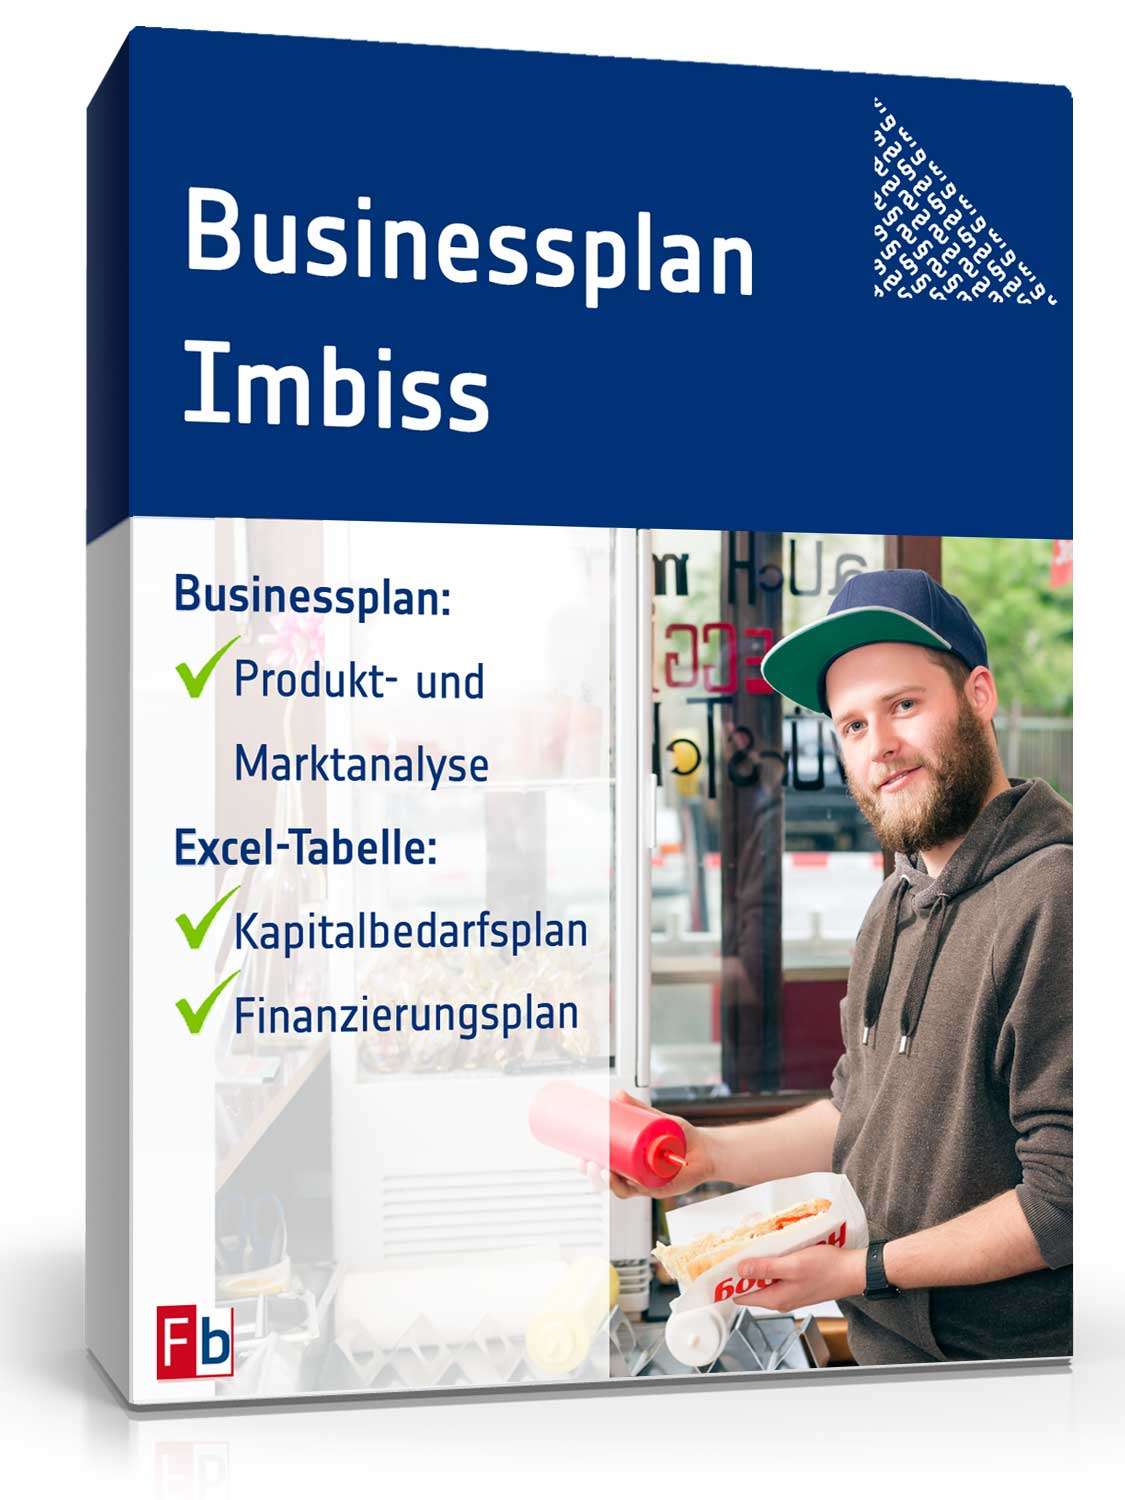 Hauptbild des Produkts: Businessplan Imbiss